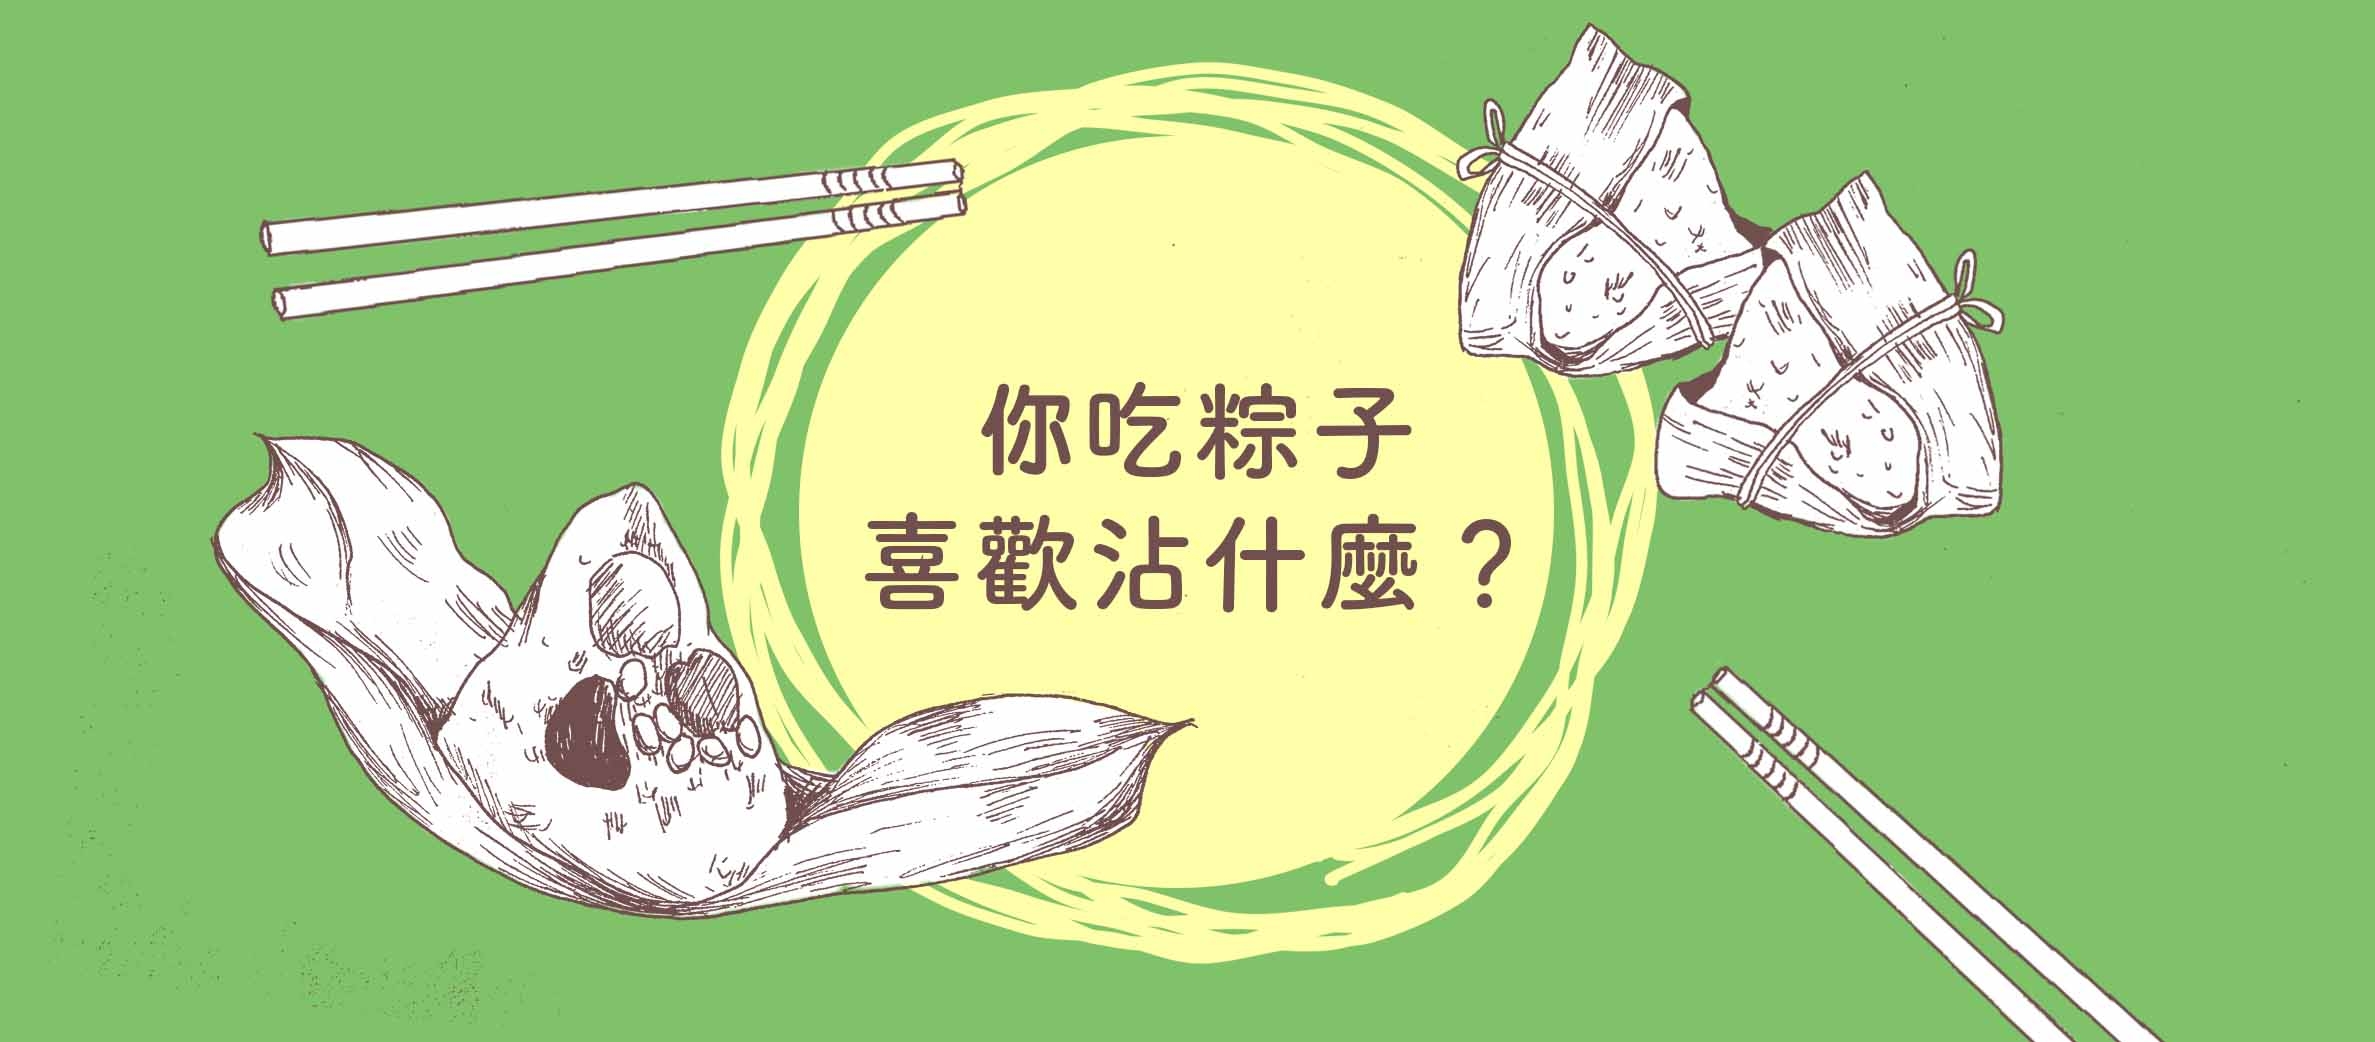 在台灣吃什麼粽子沾什麼醬，是件大家都很認真的事